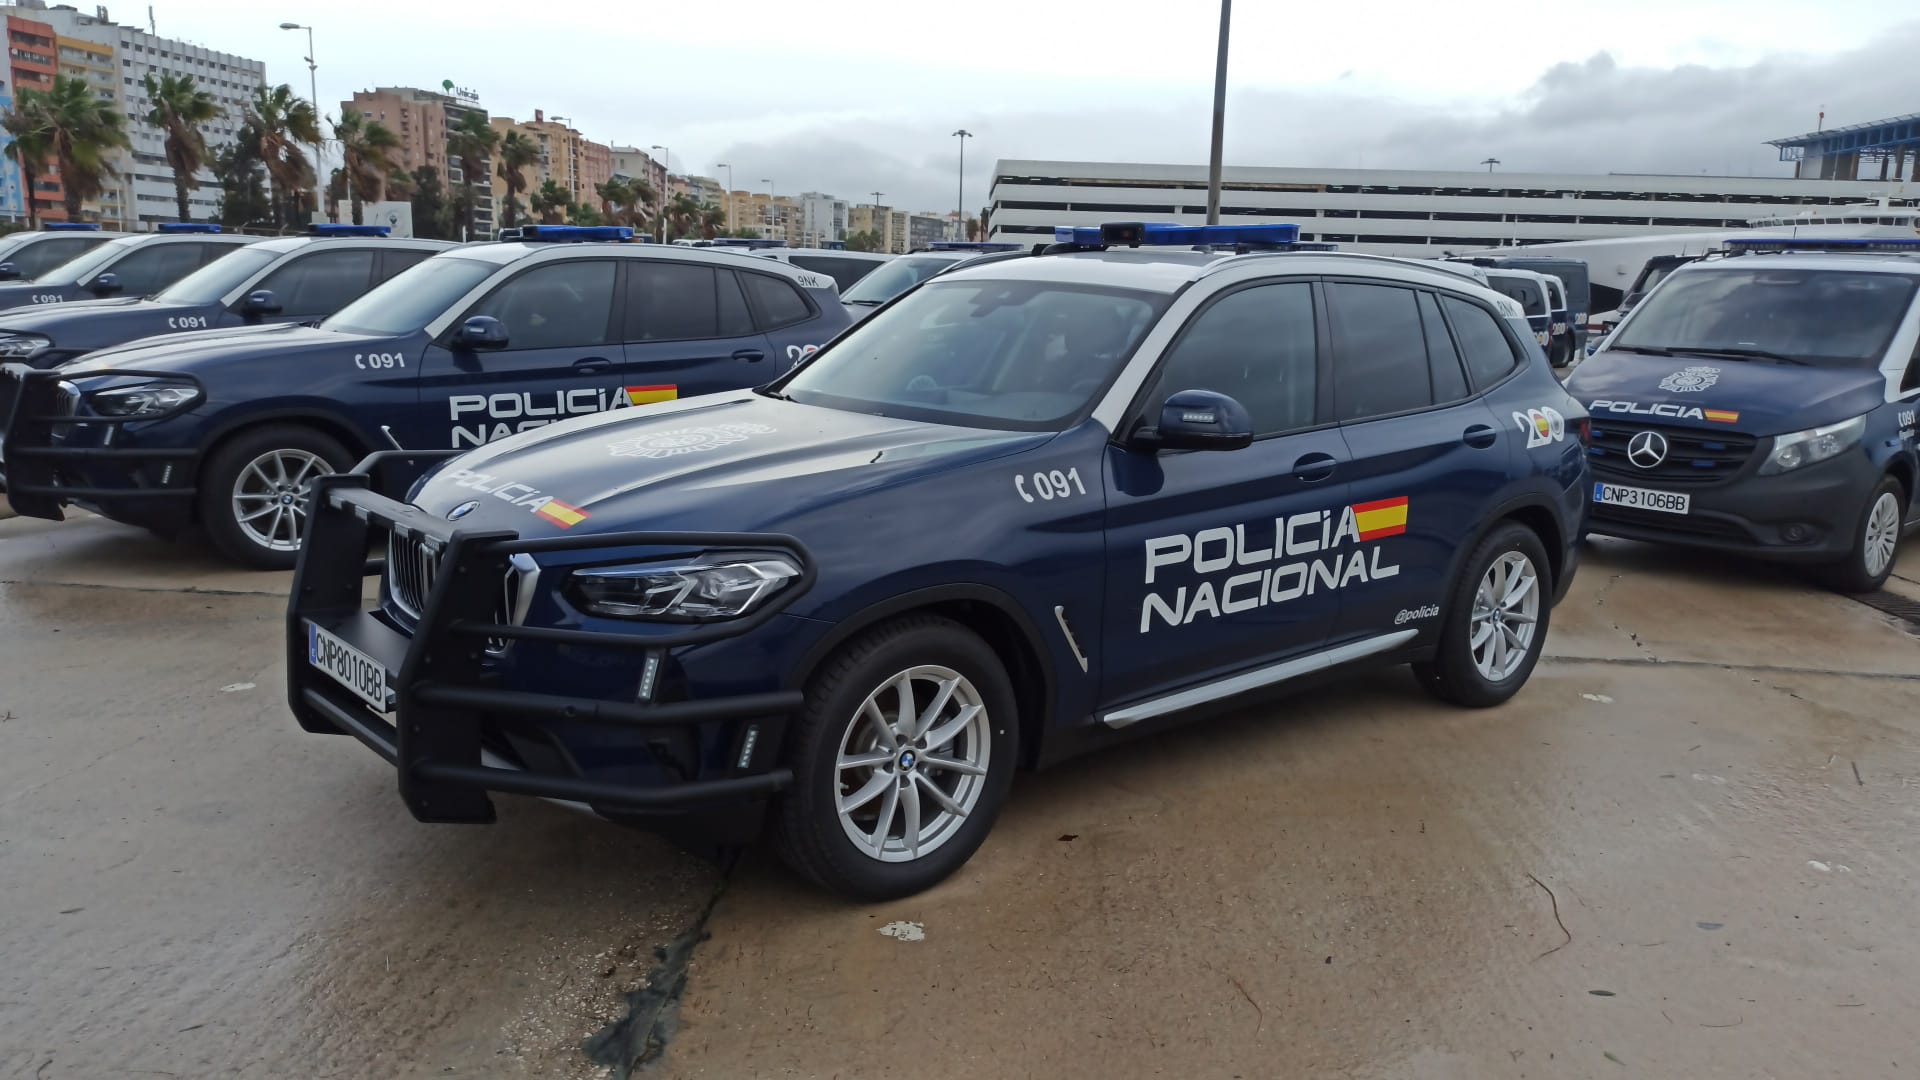 La Policía Nacional renueva su flota con 47 nuevos vehículos dentro del “Plan Especial de Seguridad para el Campo de Gibraltar”